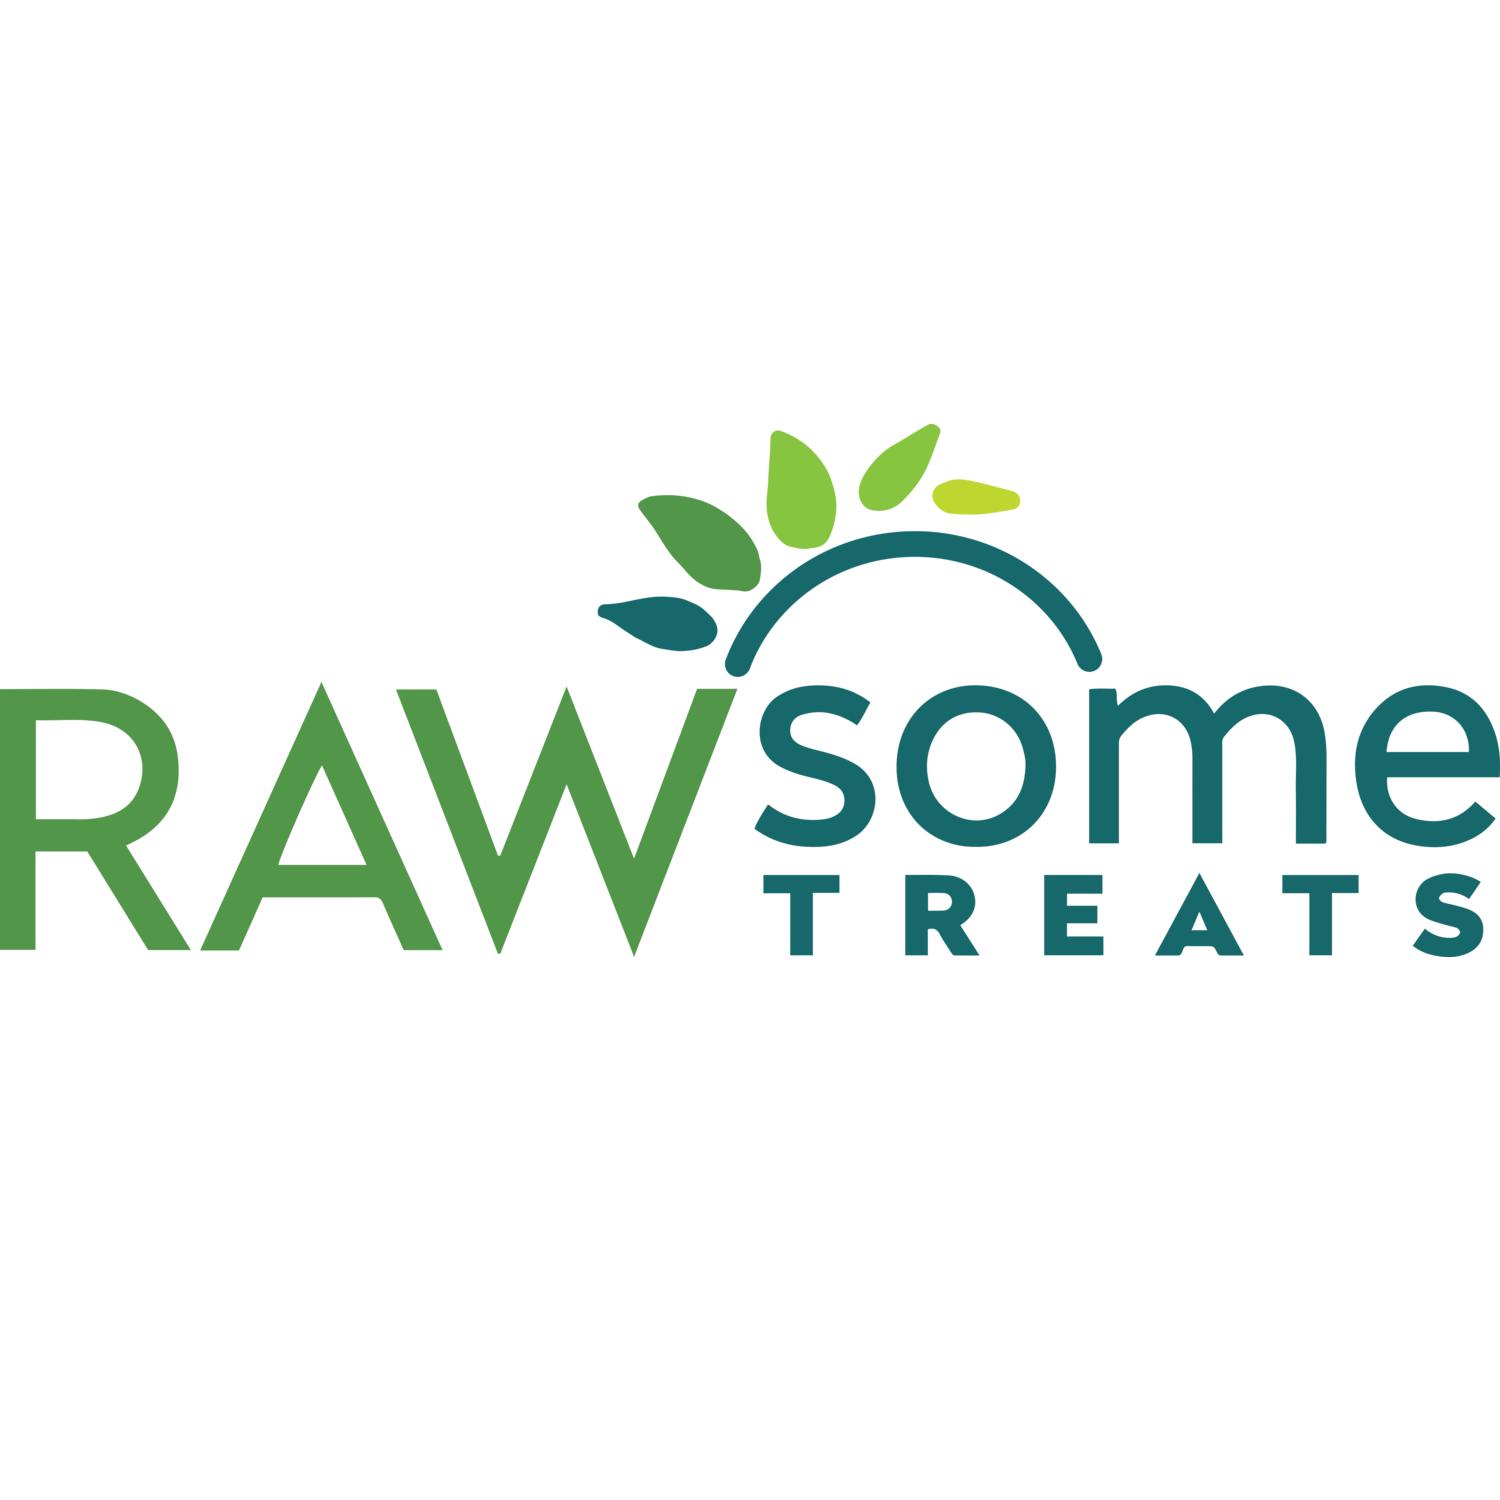 Rawsome Treats